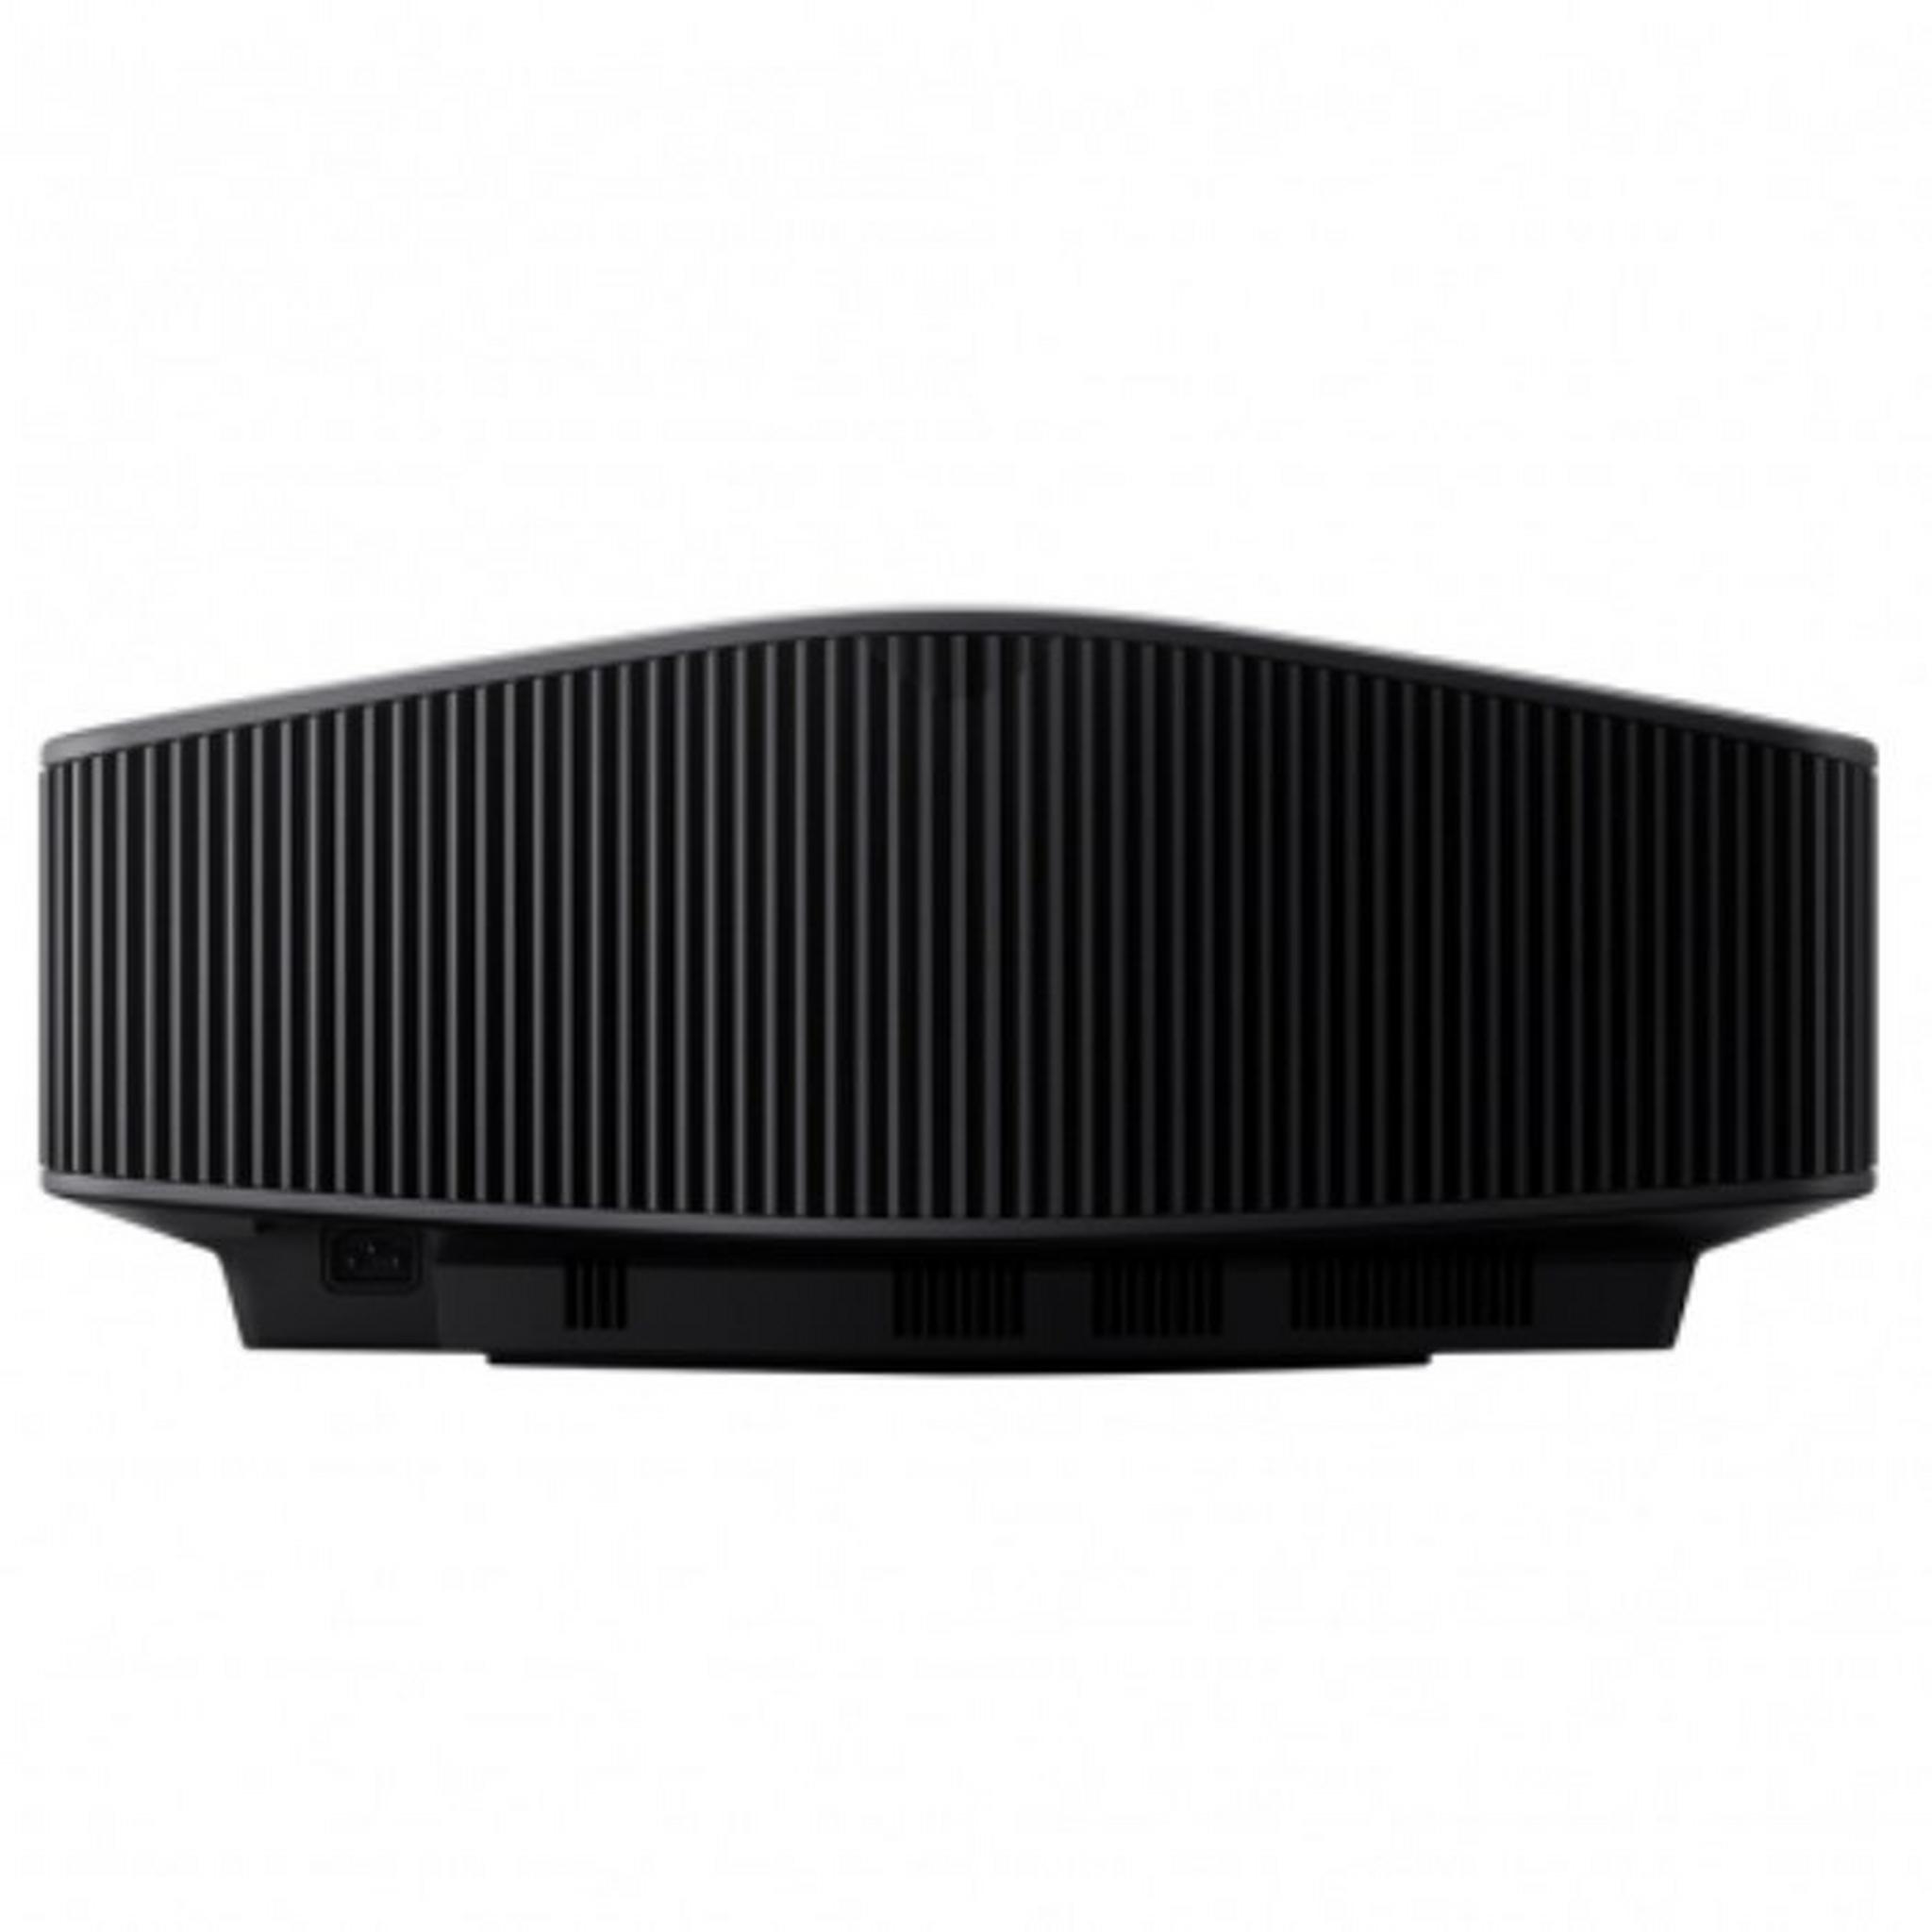 جهاز العرض ليزر للسينما المنزلية 4كي اس اكس آر دي من سوني (VPL-VW790ES) - أسود